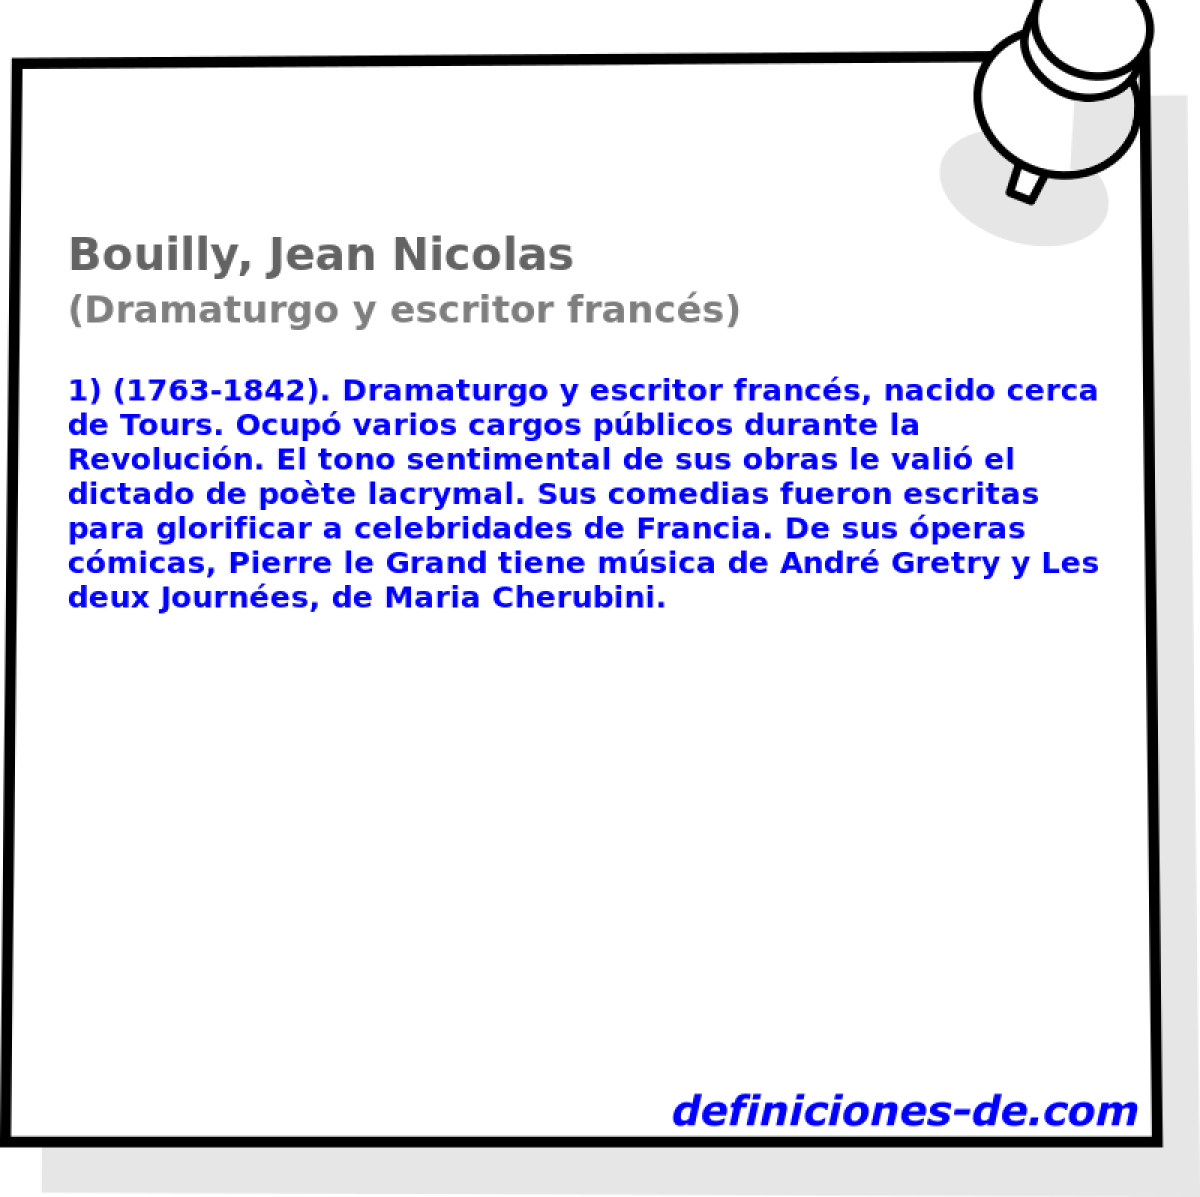 Bouilly, Jean Nicolas (Dramaturgo y escritor francs)